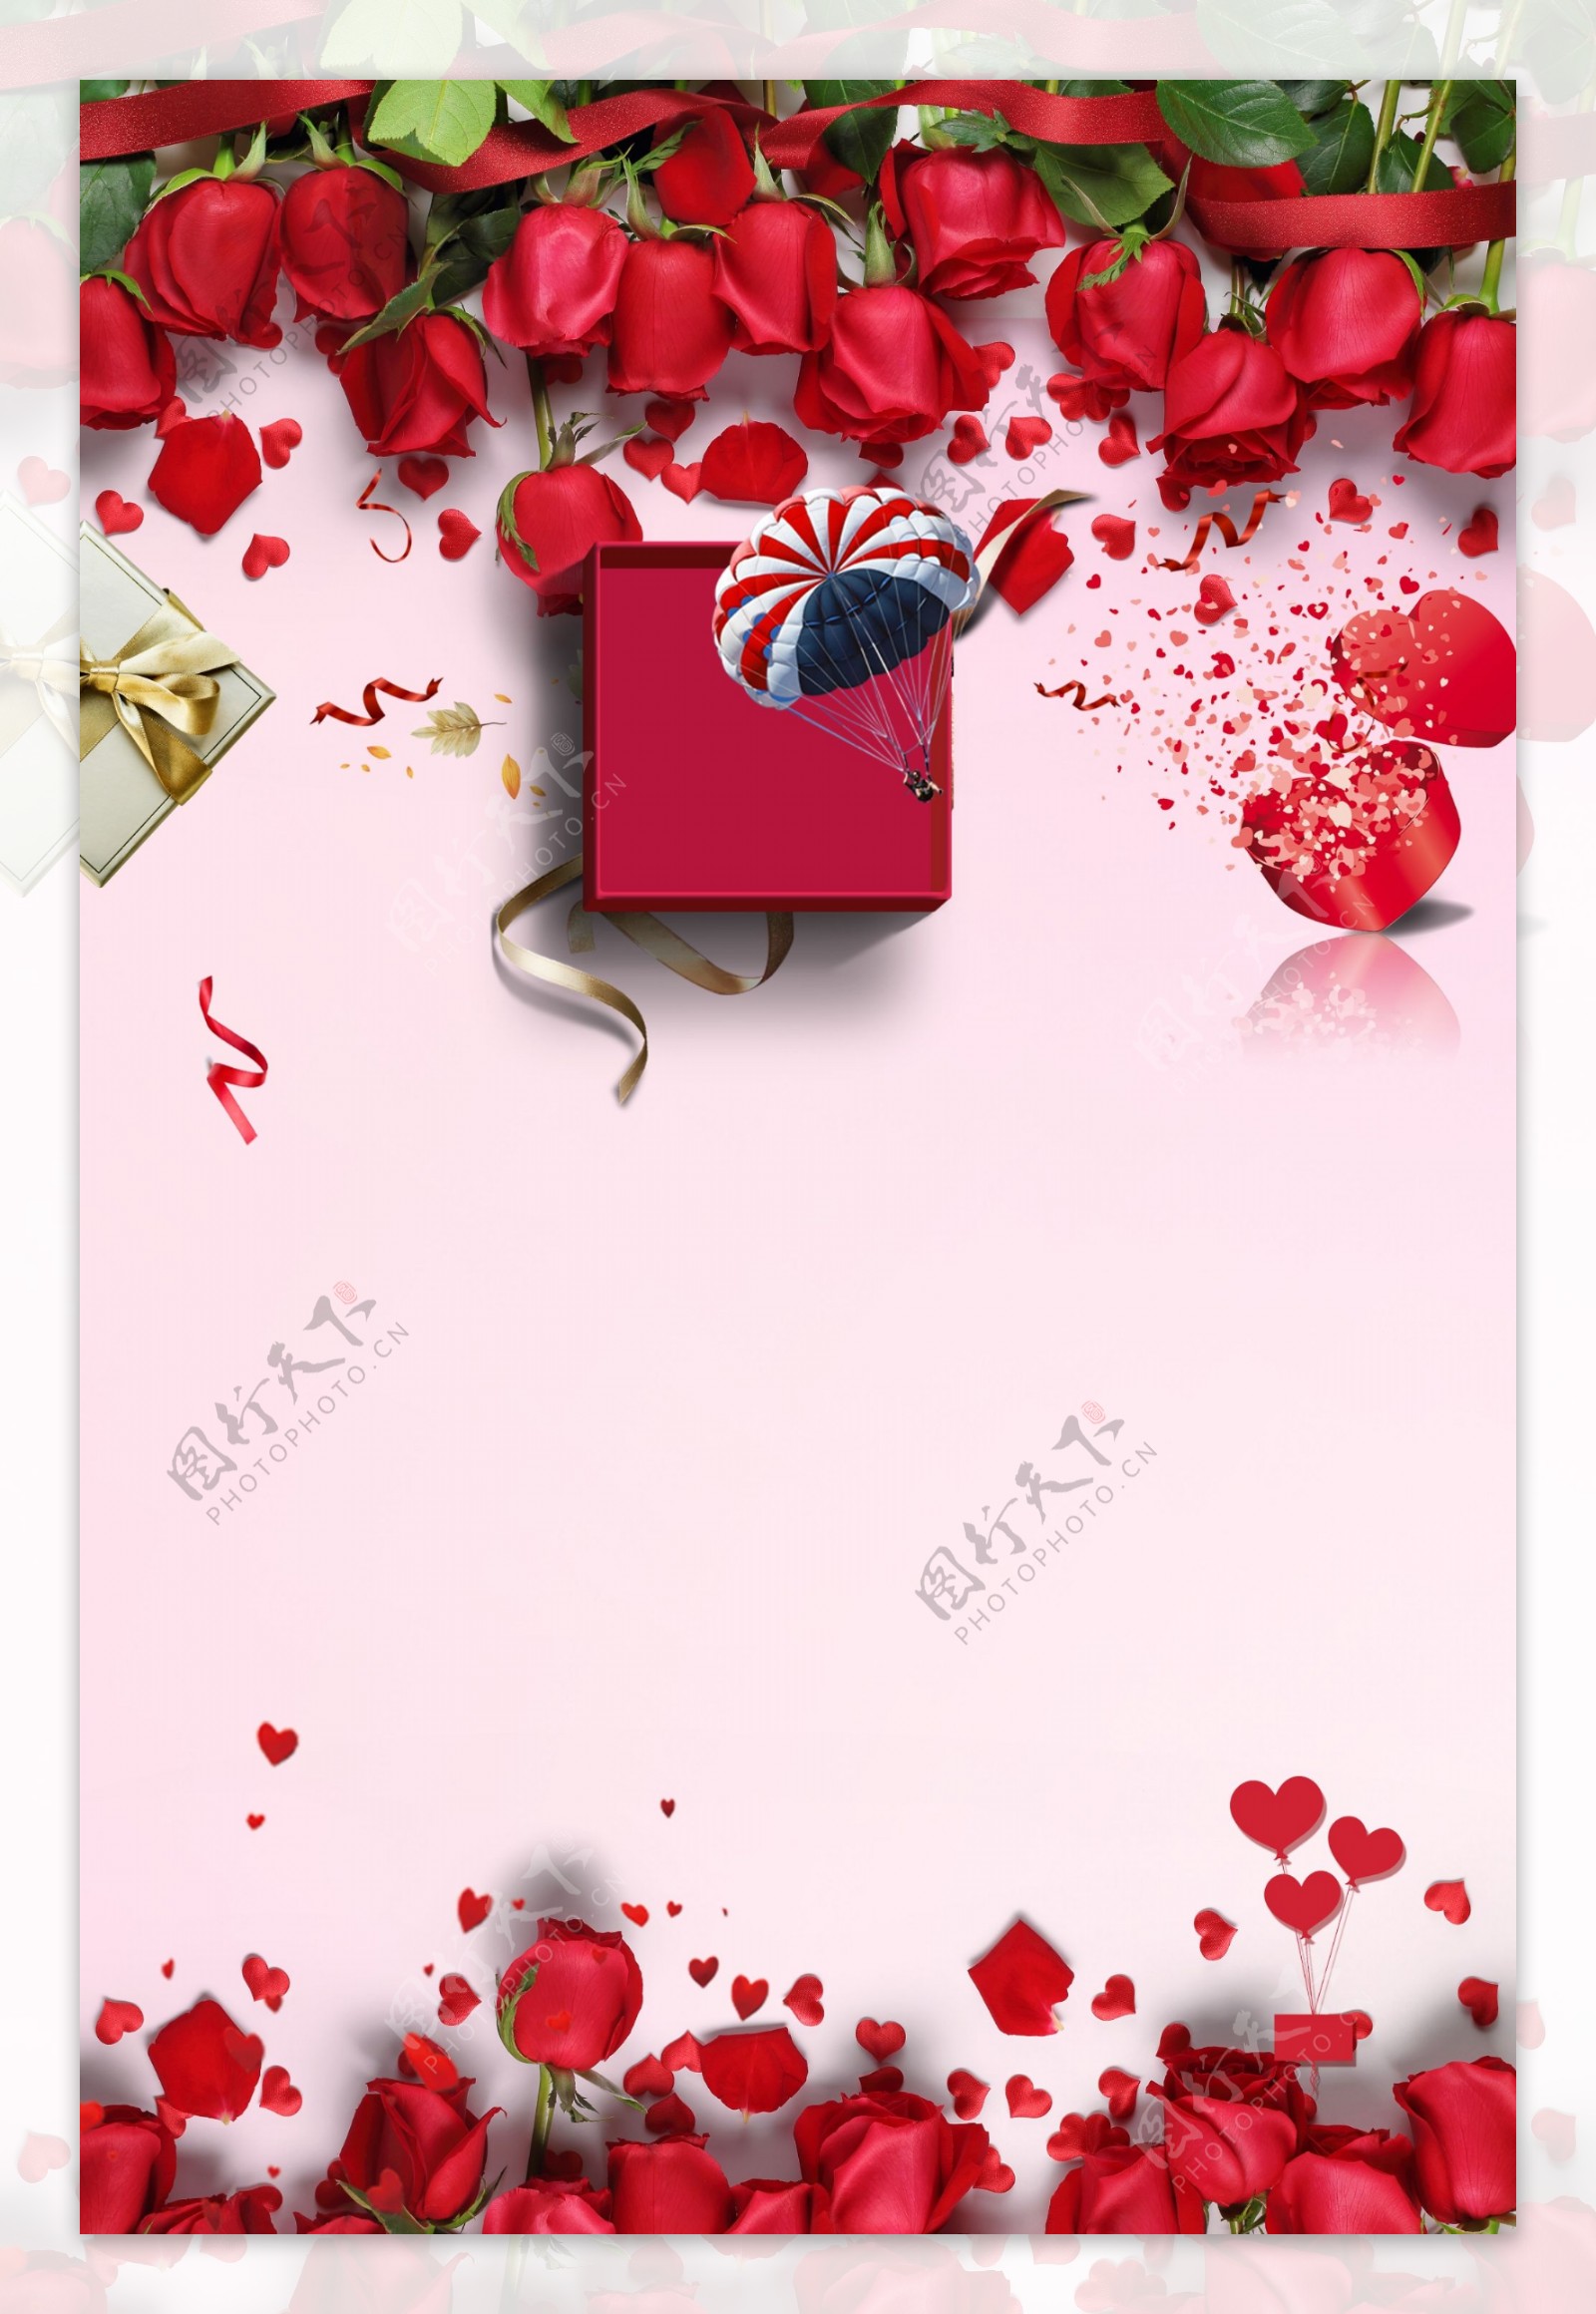 红玫瑰礼盒感恩节背景素材